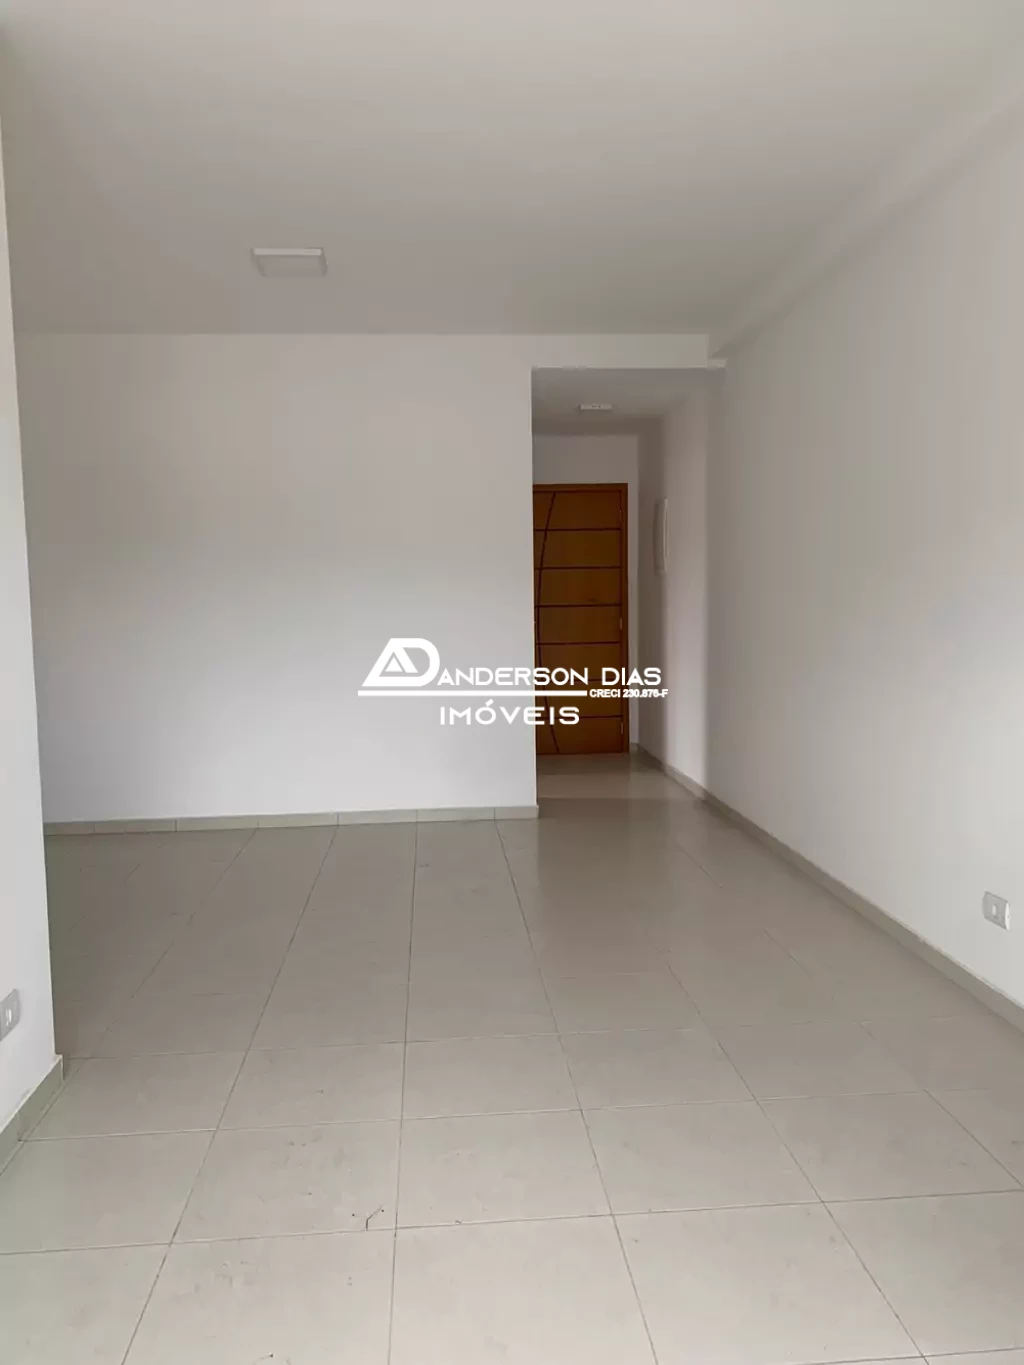 Apartamento com 3 dormitórios  à venda, 86 m² por R$ 650.000 - Indaiá - Caraguatatuba/SP